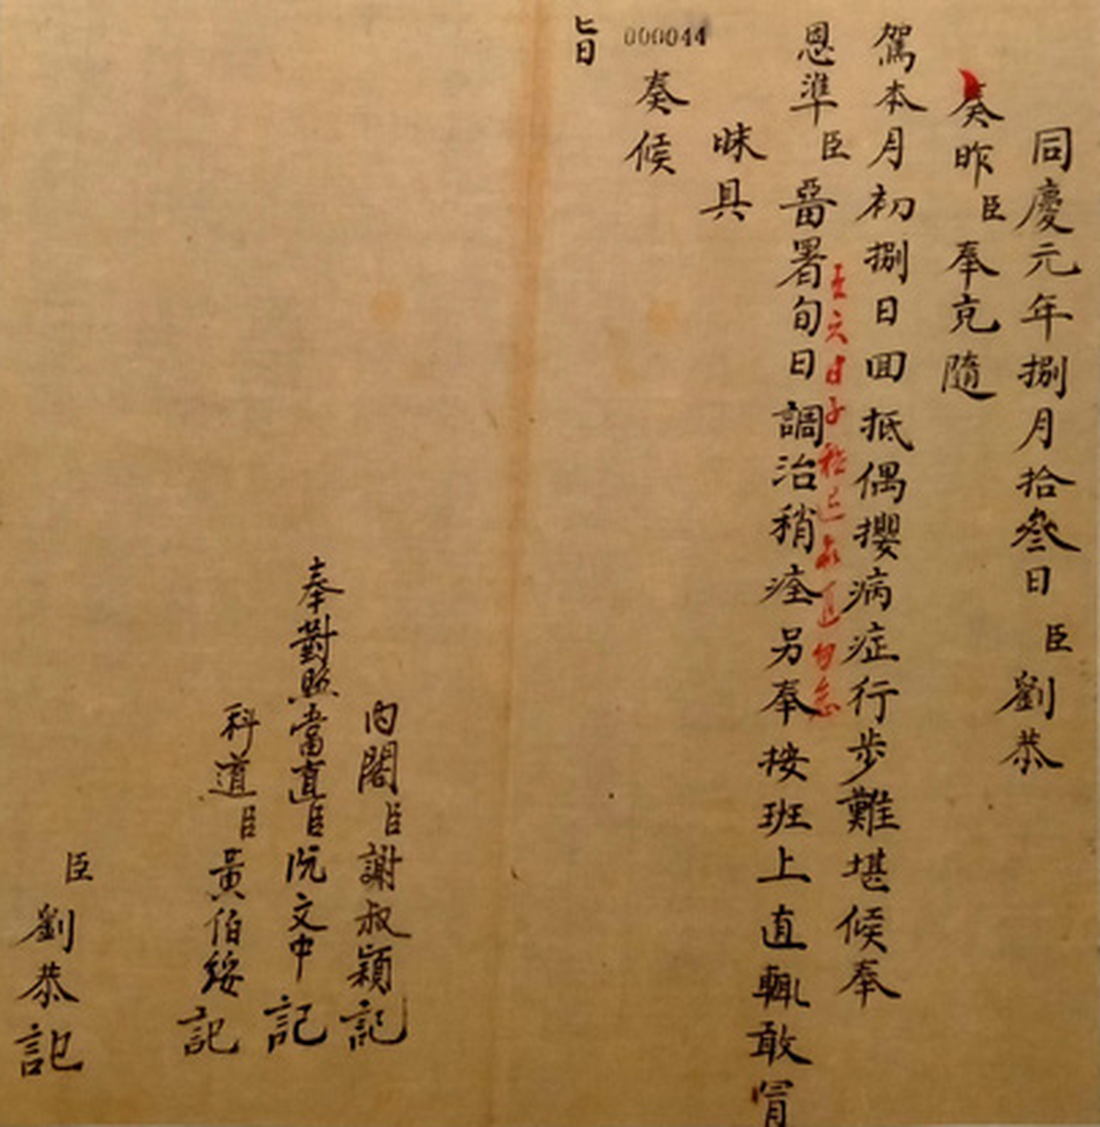 Xem cách hoàng đế triều Nguyễn trừ quan tham, nuôi dưỡng chúng dân - Ảnh 19.